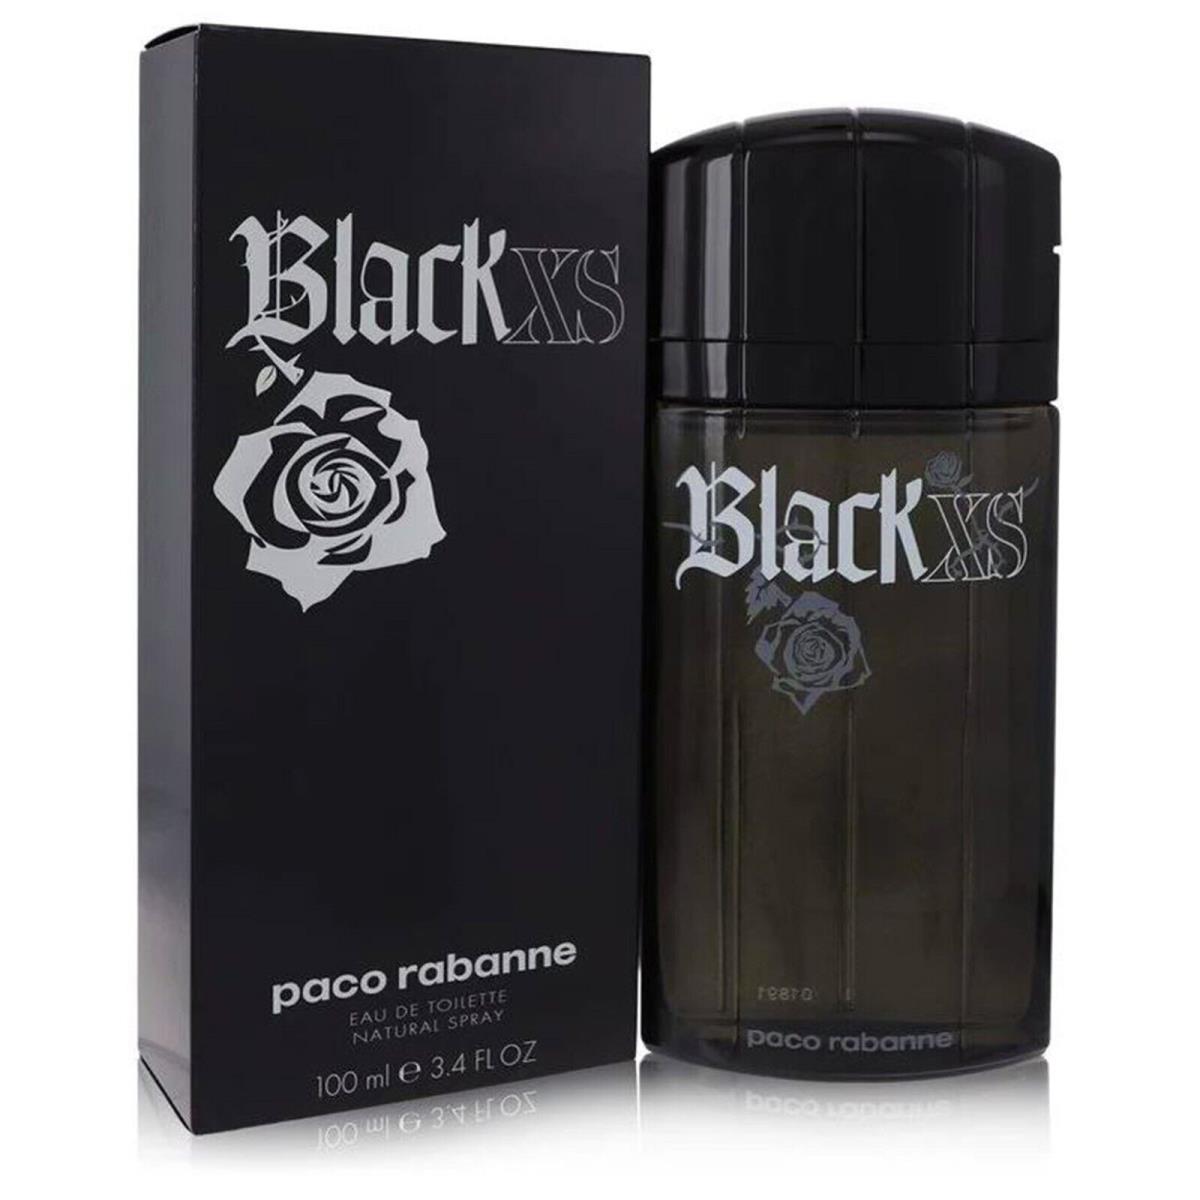 Black Xs Cologne by Paco Rabanne Men Perfume Eau De Toilette Spray 3.4 oz 100 ml